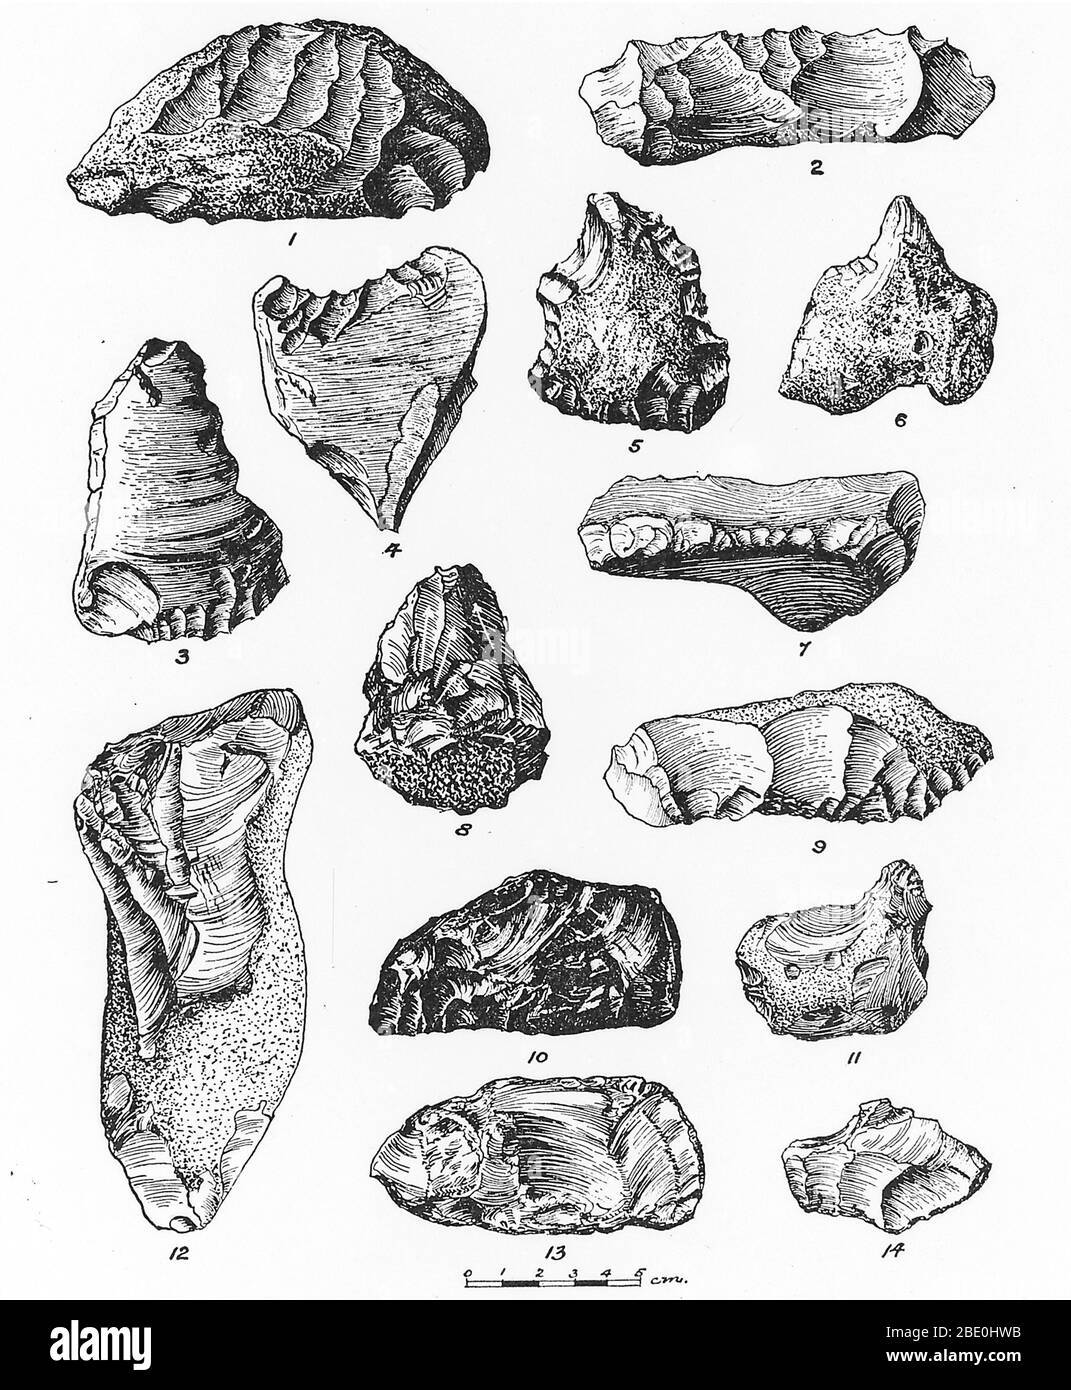 Eolitos de Francia, Bélgica e Inglaterra. Un eolito es un nódulo de piedra astillada. Se pensó que los eolitos eran artefactos, las primeras herramientas de piedra, pero ahora se cree que son producidos naturalmente por procesos geológicos como la glaciación. Foto de stock